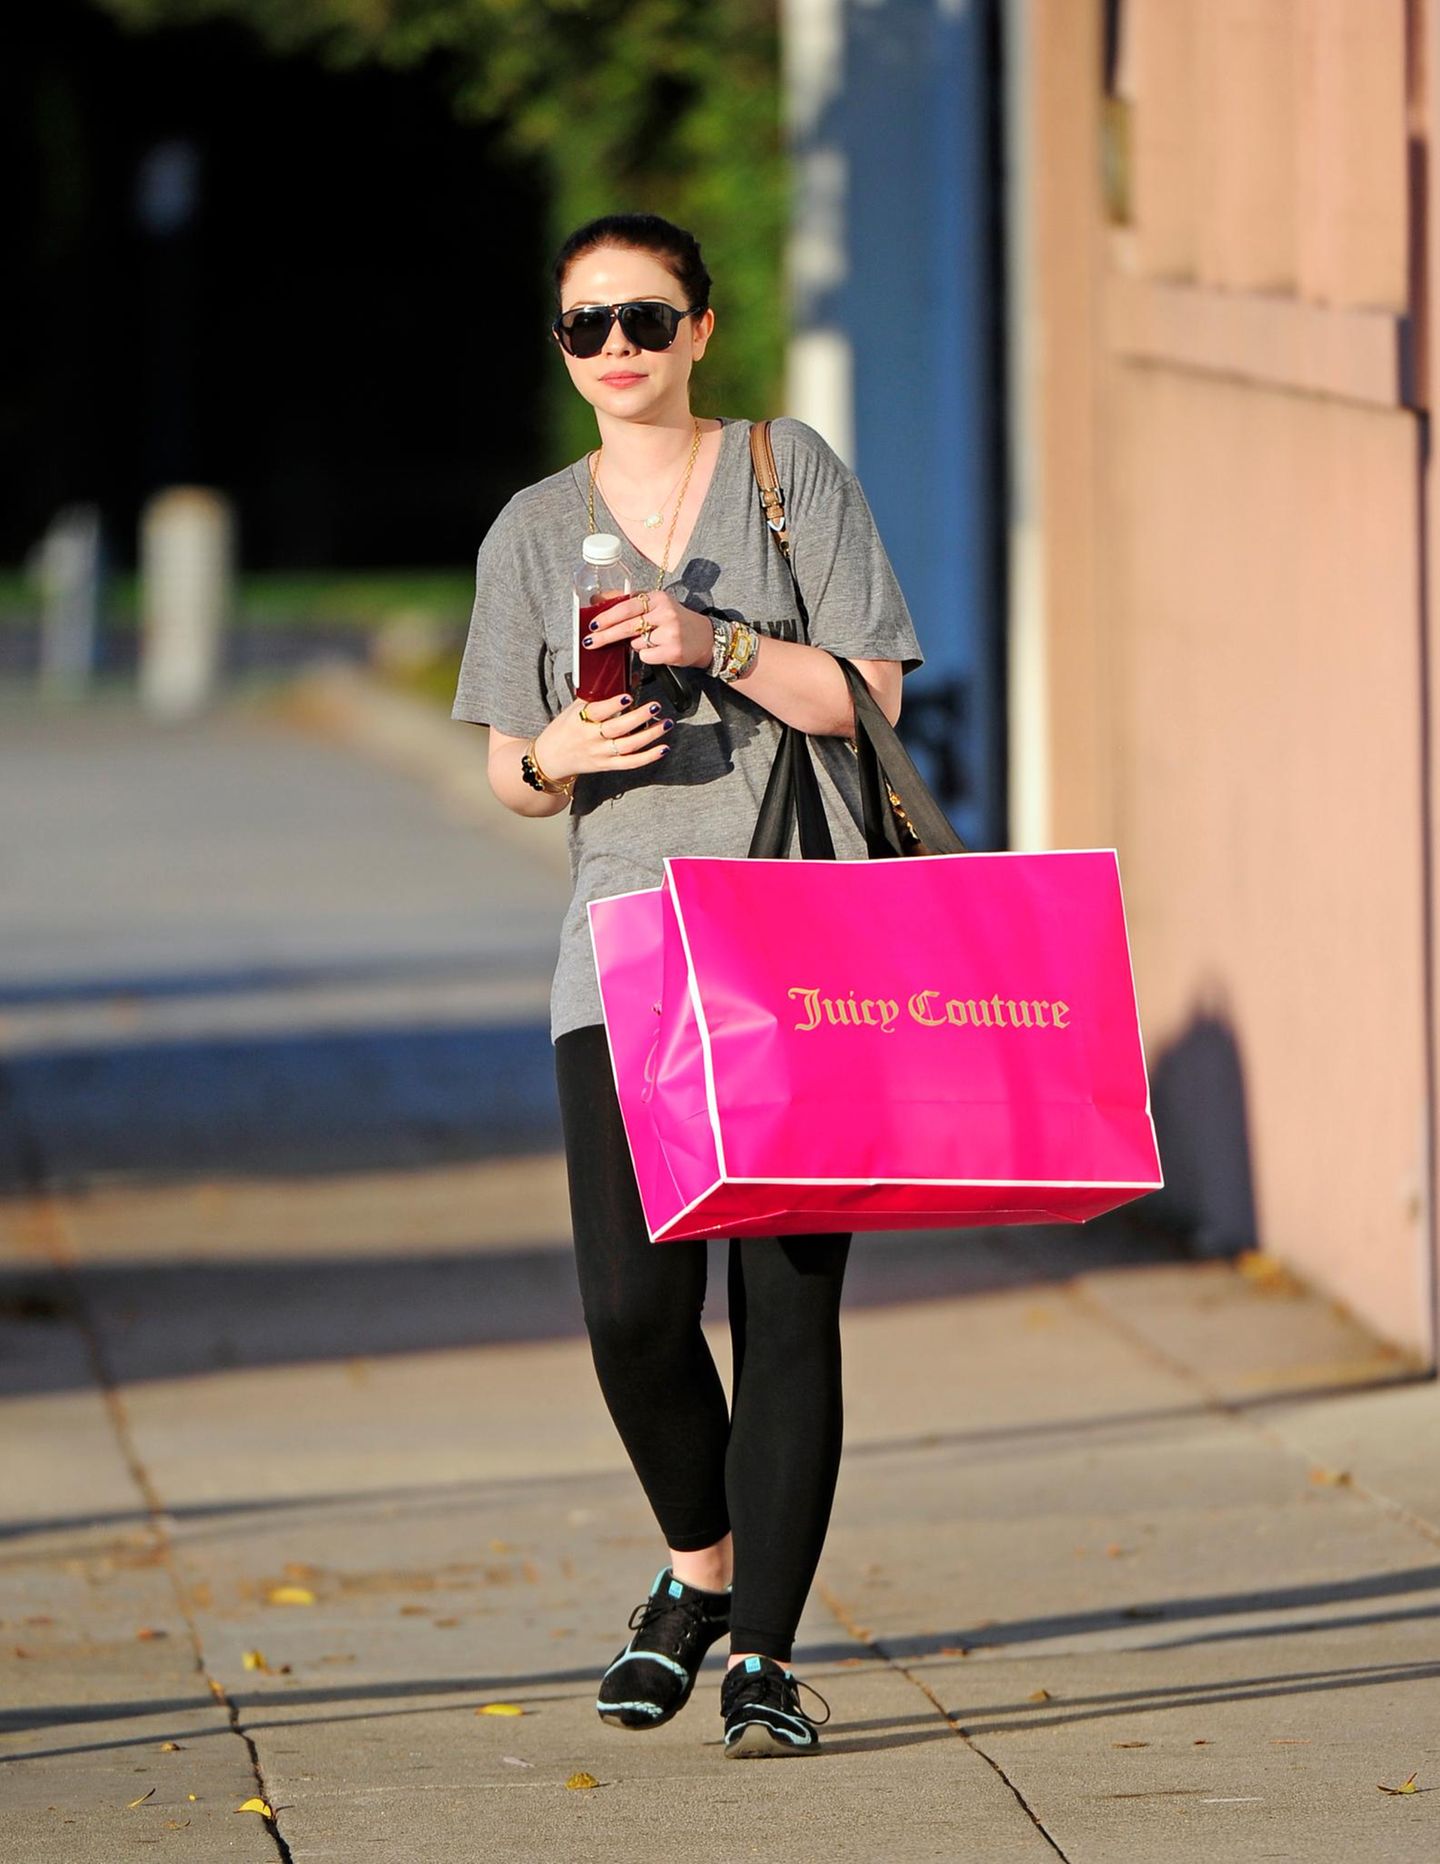 Michelle Trachtenberg geht in Beverly Hills shoppen und ist bei "Juicy Couture", einer kalifornischen Modemarke, fündig geworden.